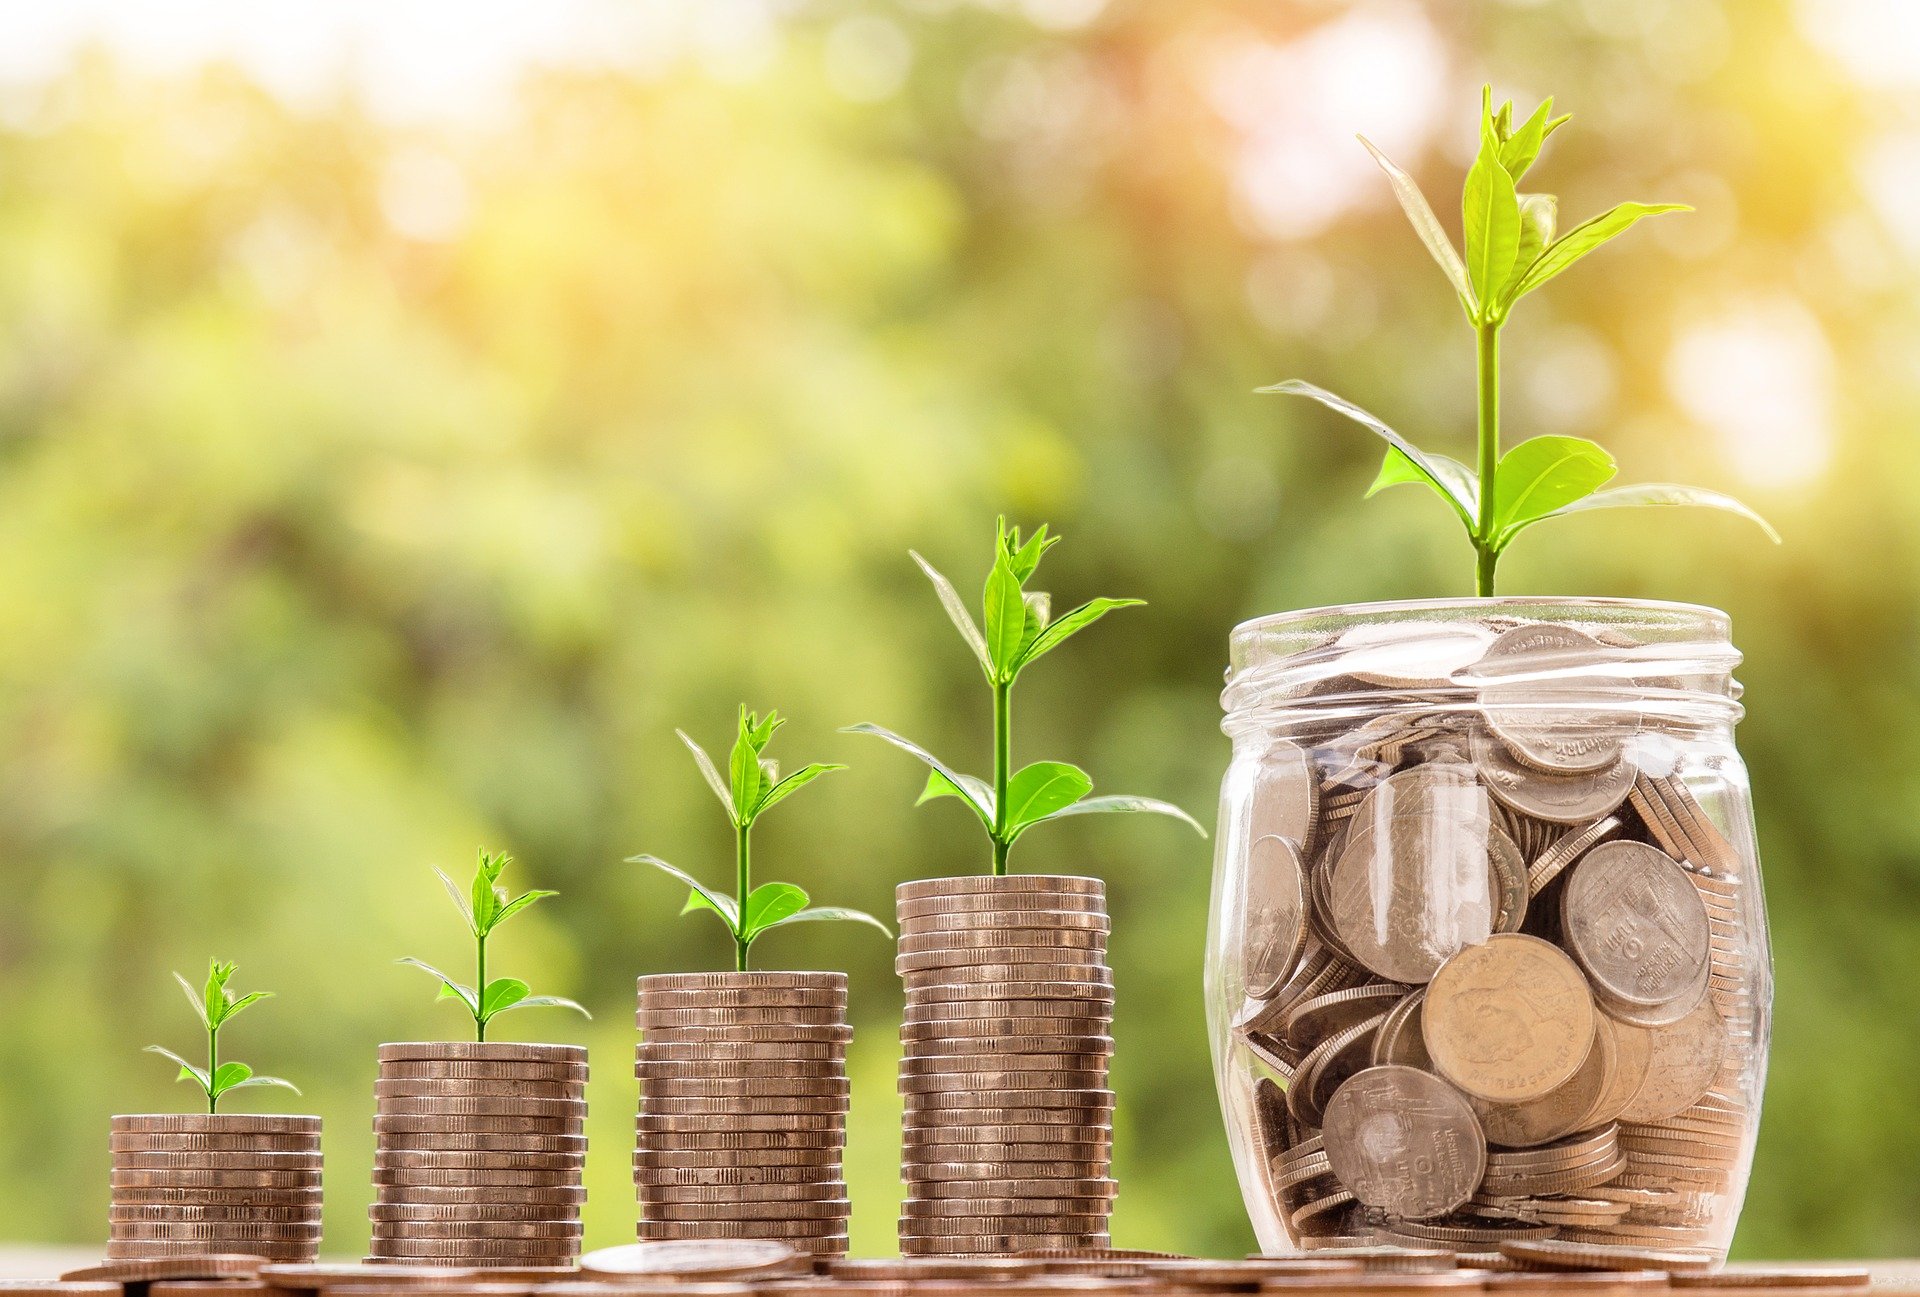 Grafik: aus Geldstücken wächst eine Pflanze, Quelle: pixabay